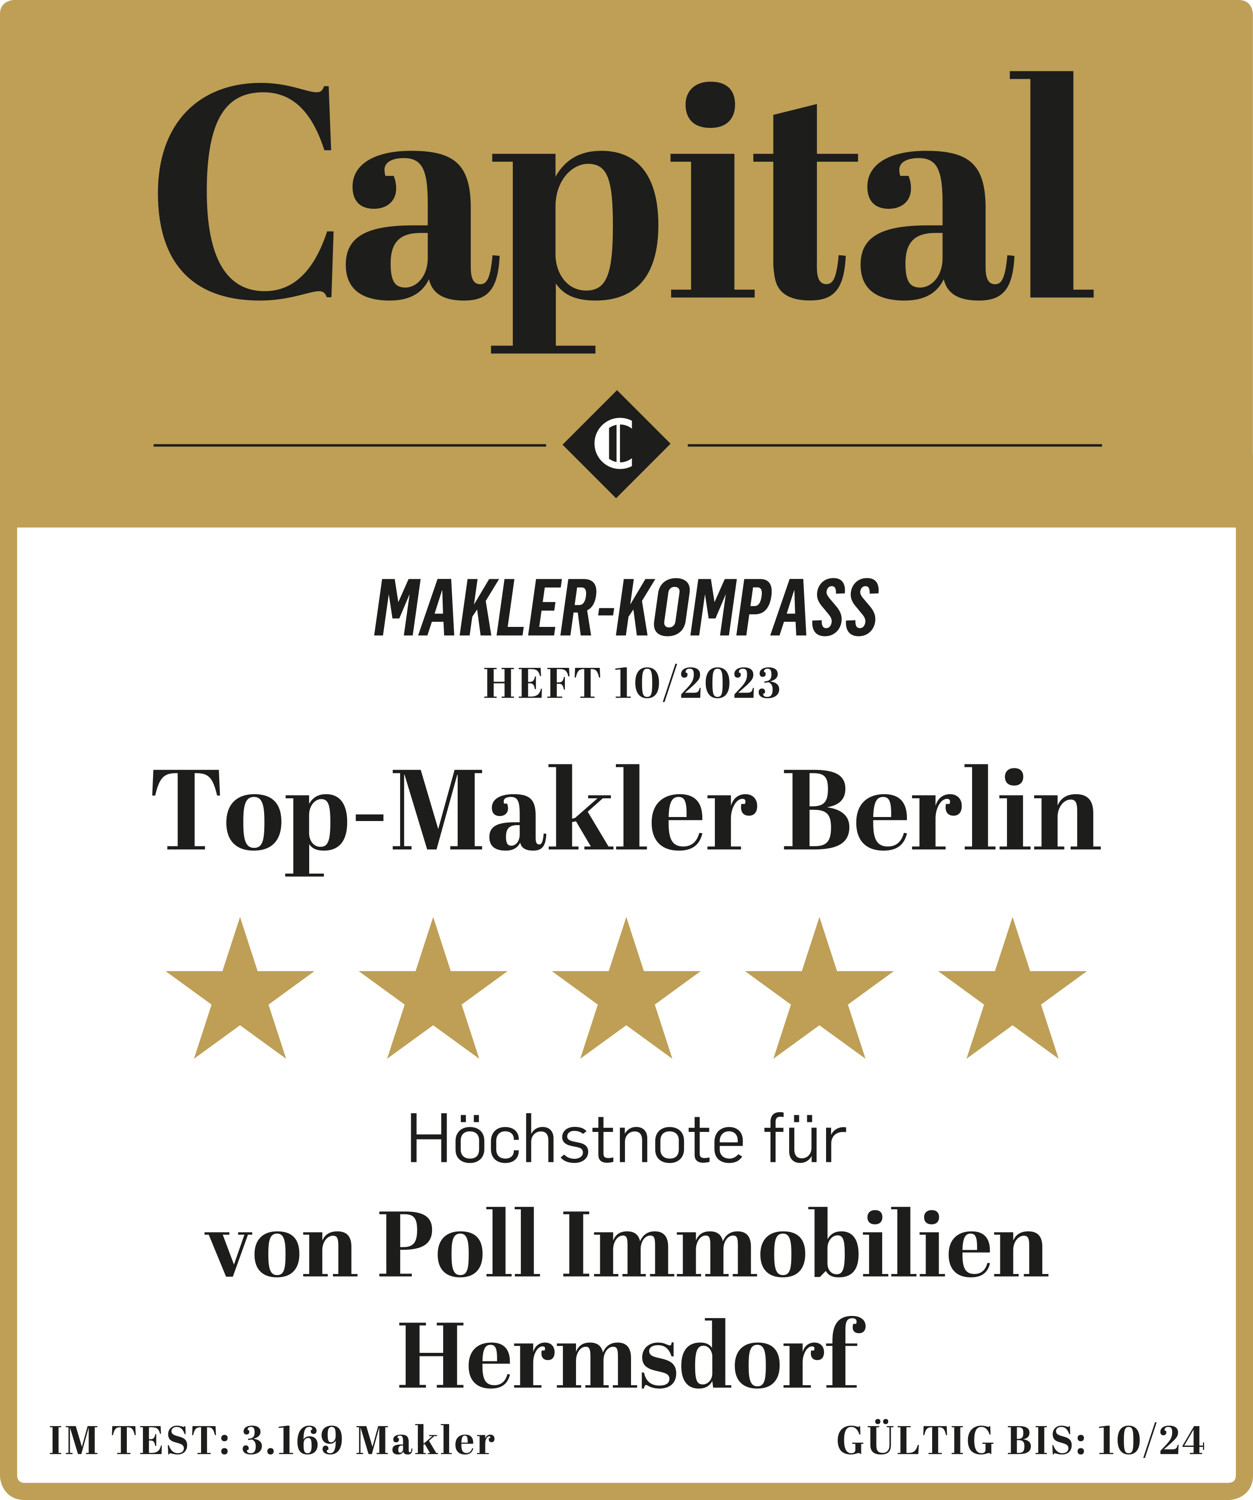 CAP_1023_Makler-Kompass_Berlin_Hermsdorf